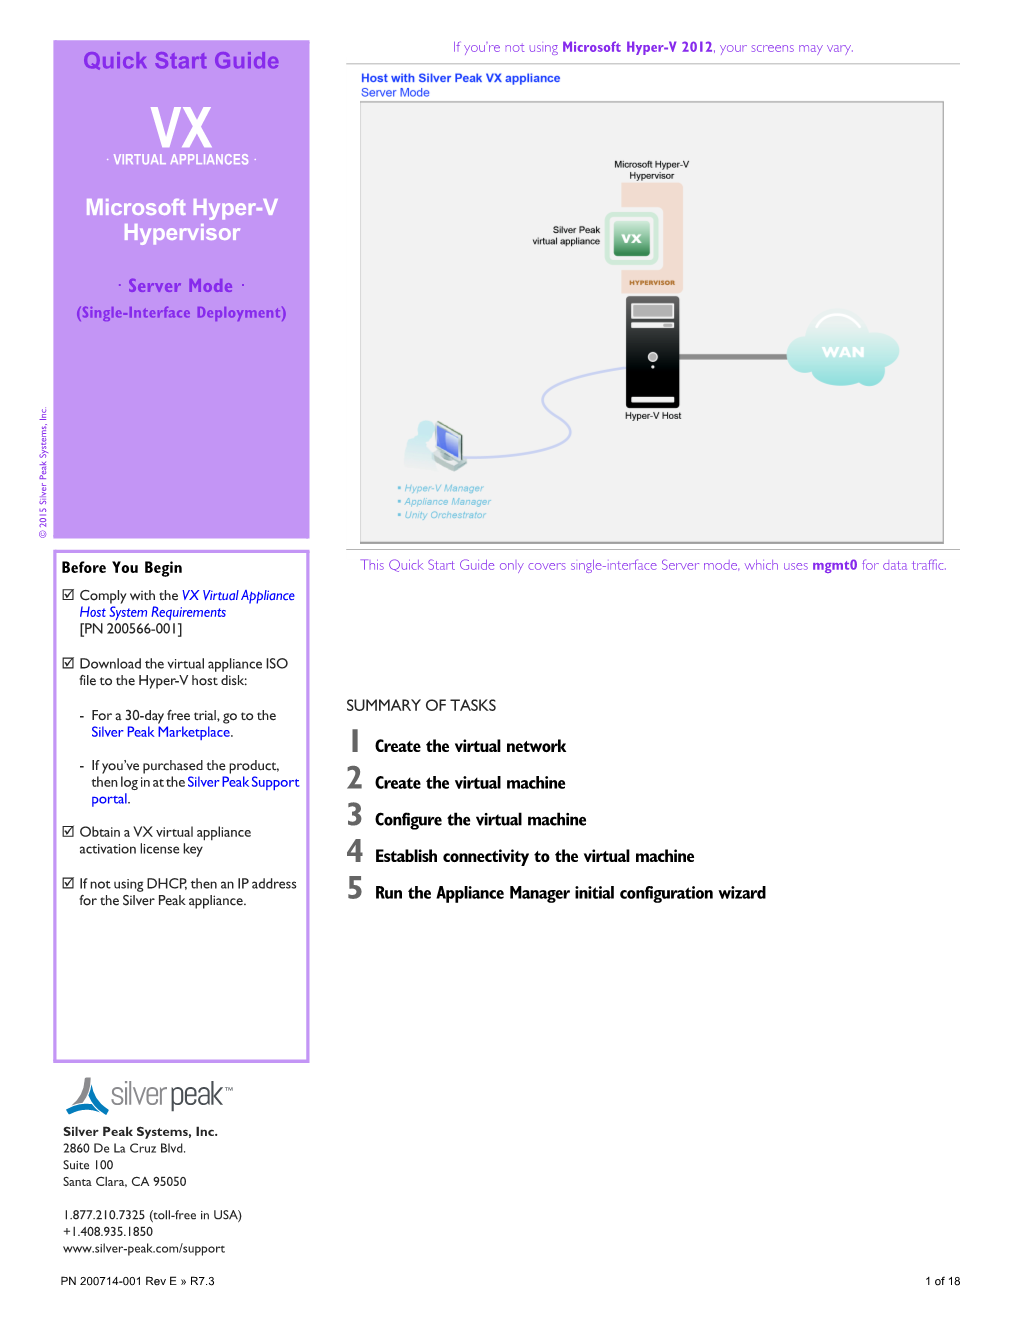 Quick Start Guide Microsoft Hyper-V Hypervisor